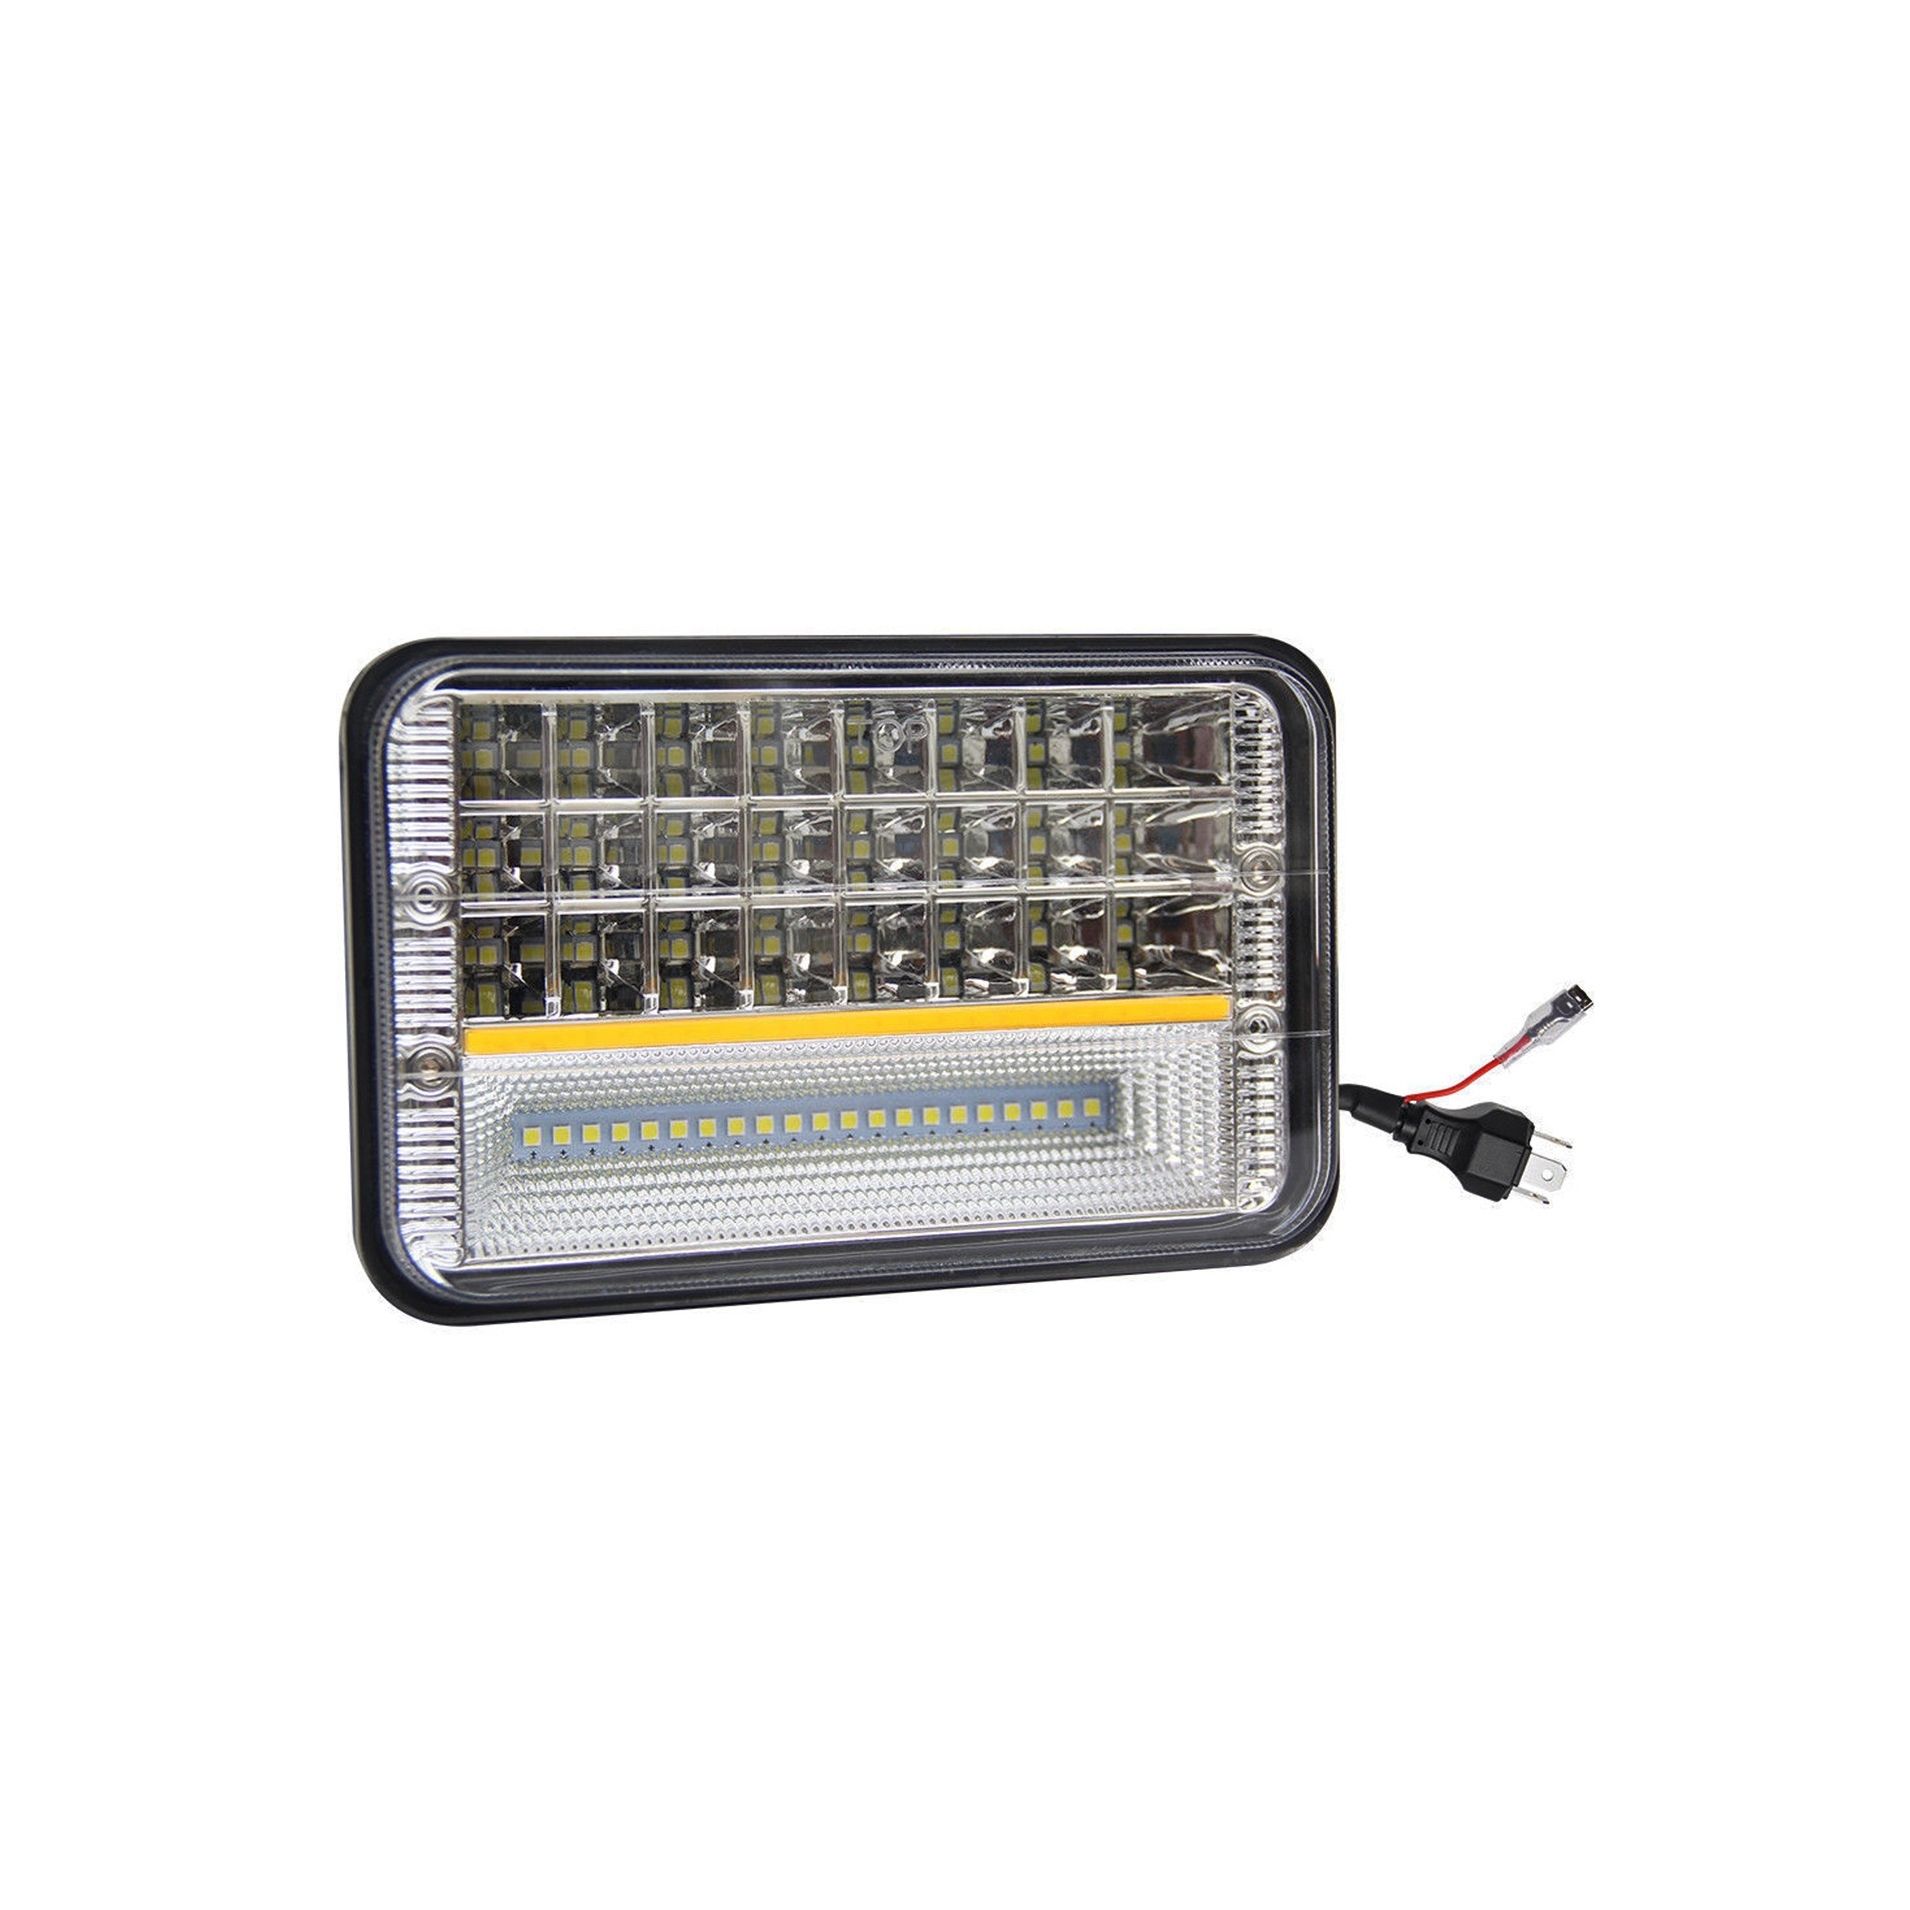 Proiector LED cu DRL 45W 2 faze 12/24V AL-010720-7